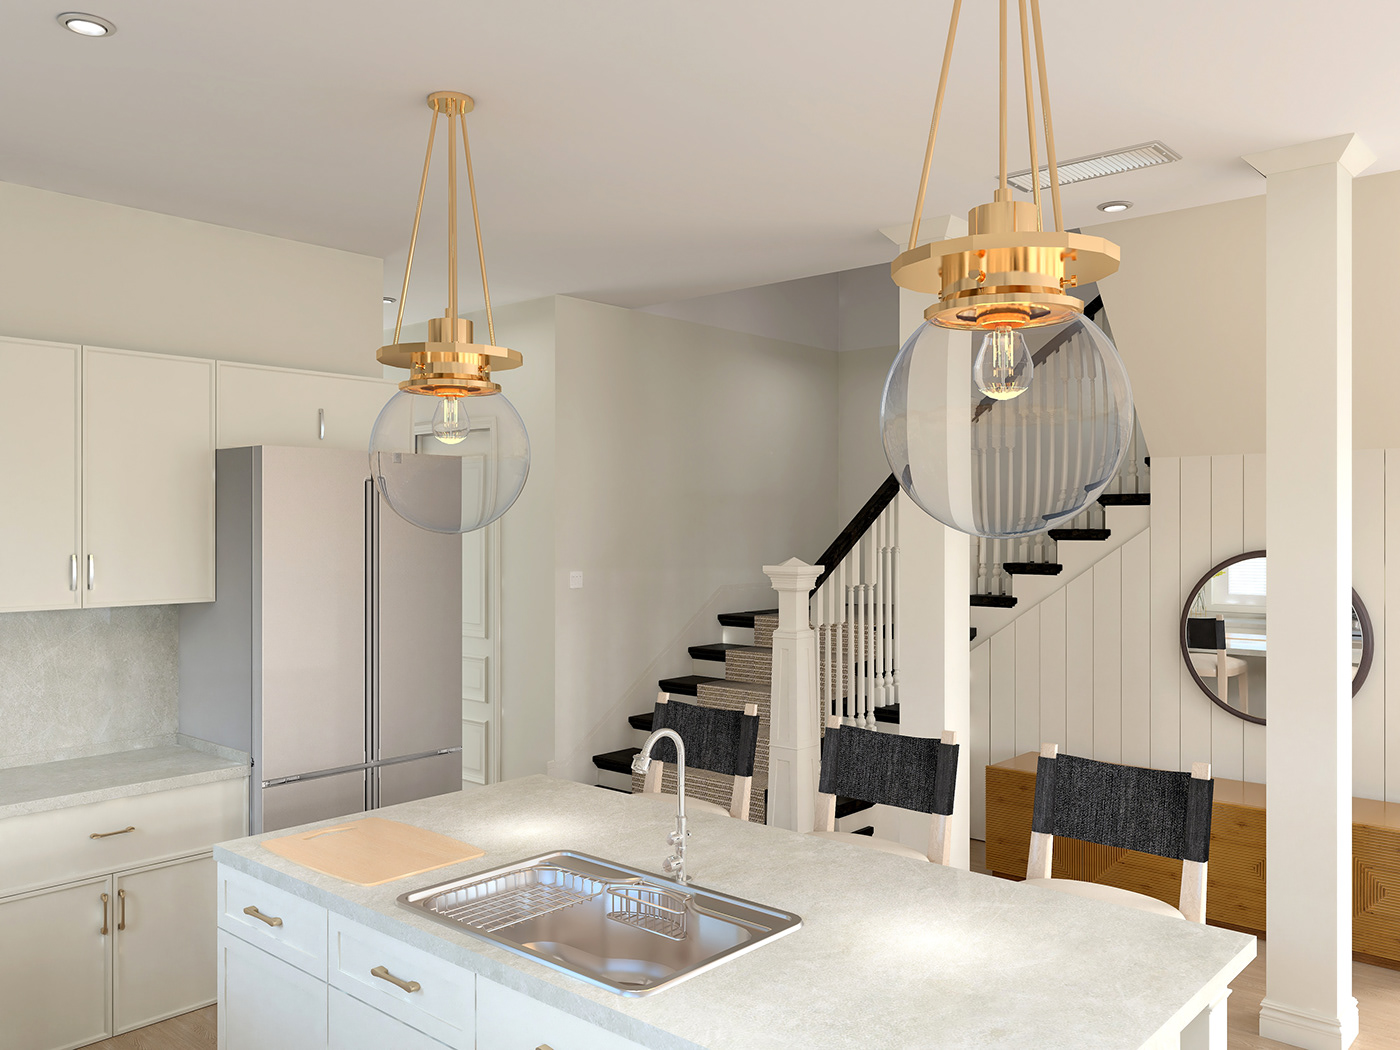 3Dvizualization designer edesigner interior design  interiordesign kitchen Render